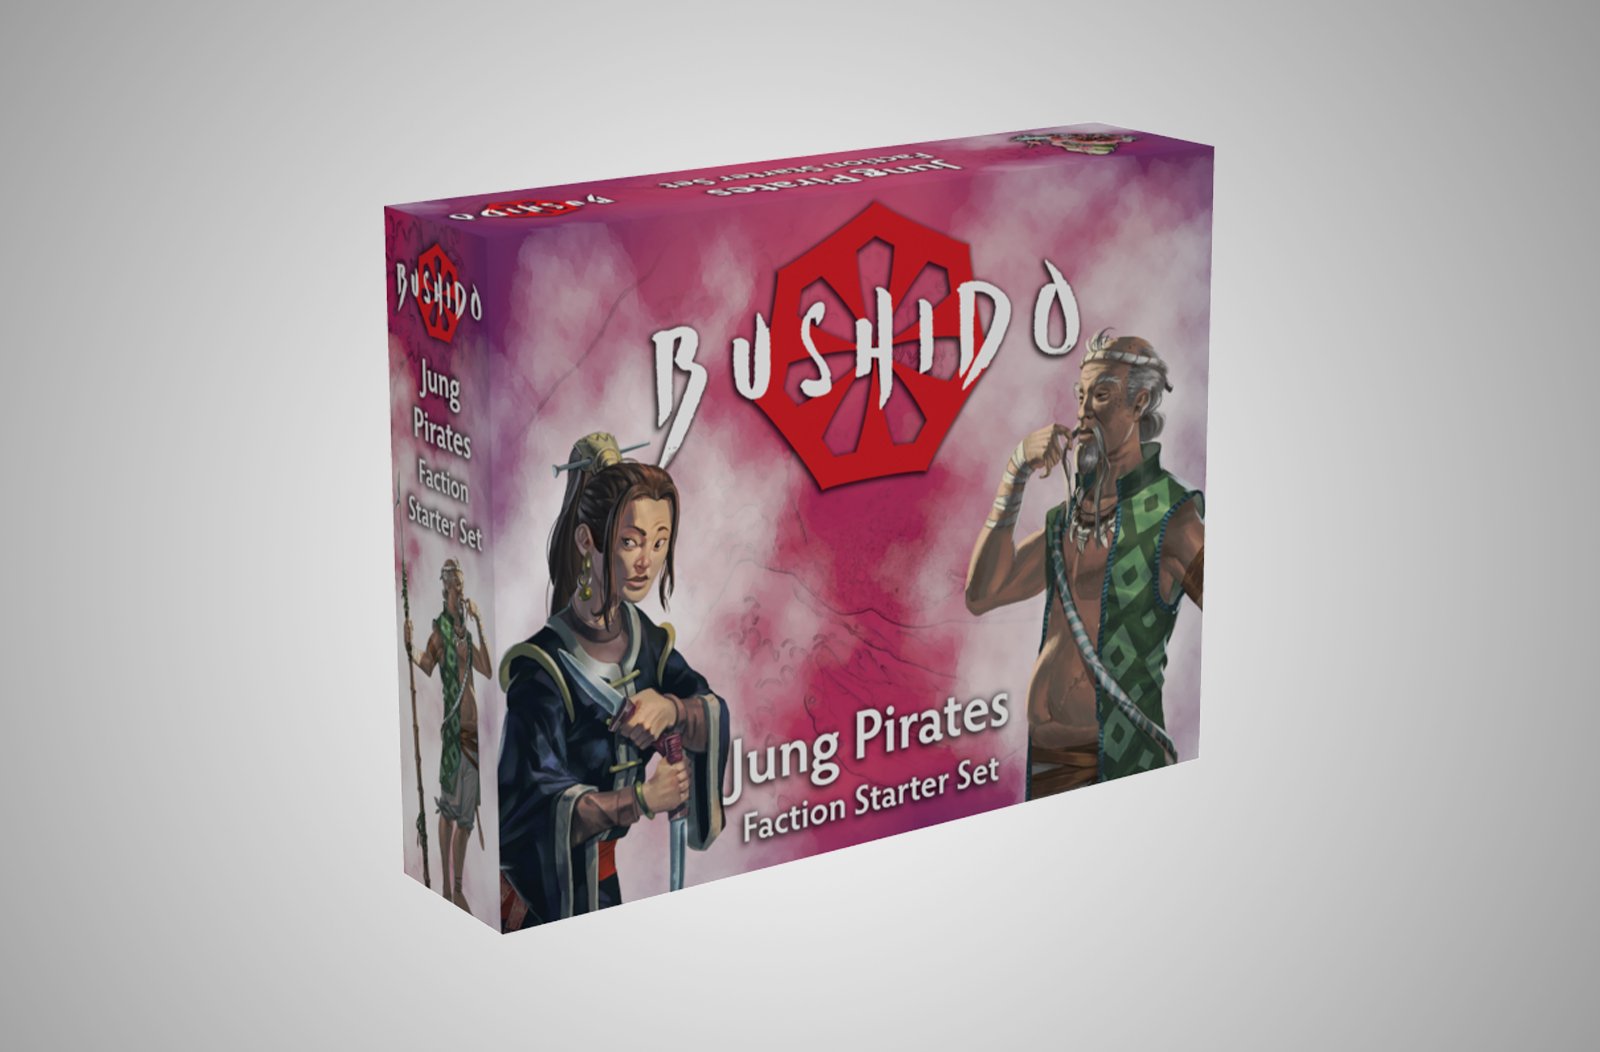 Box of jung pirates starter set